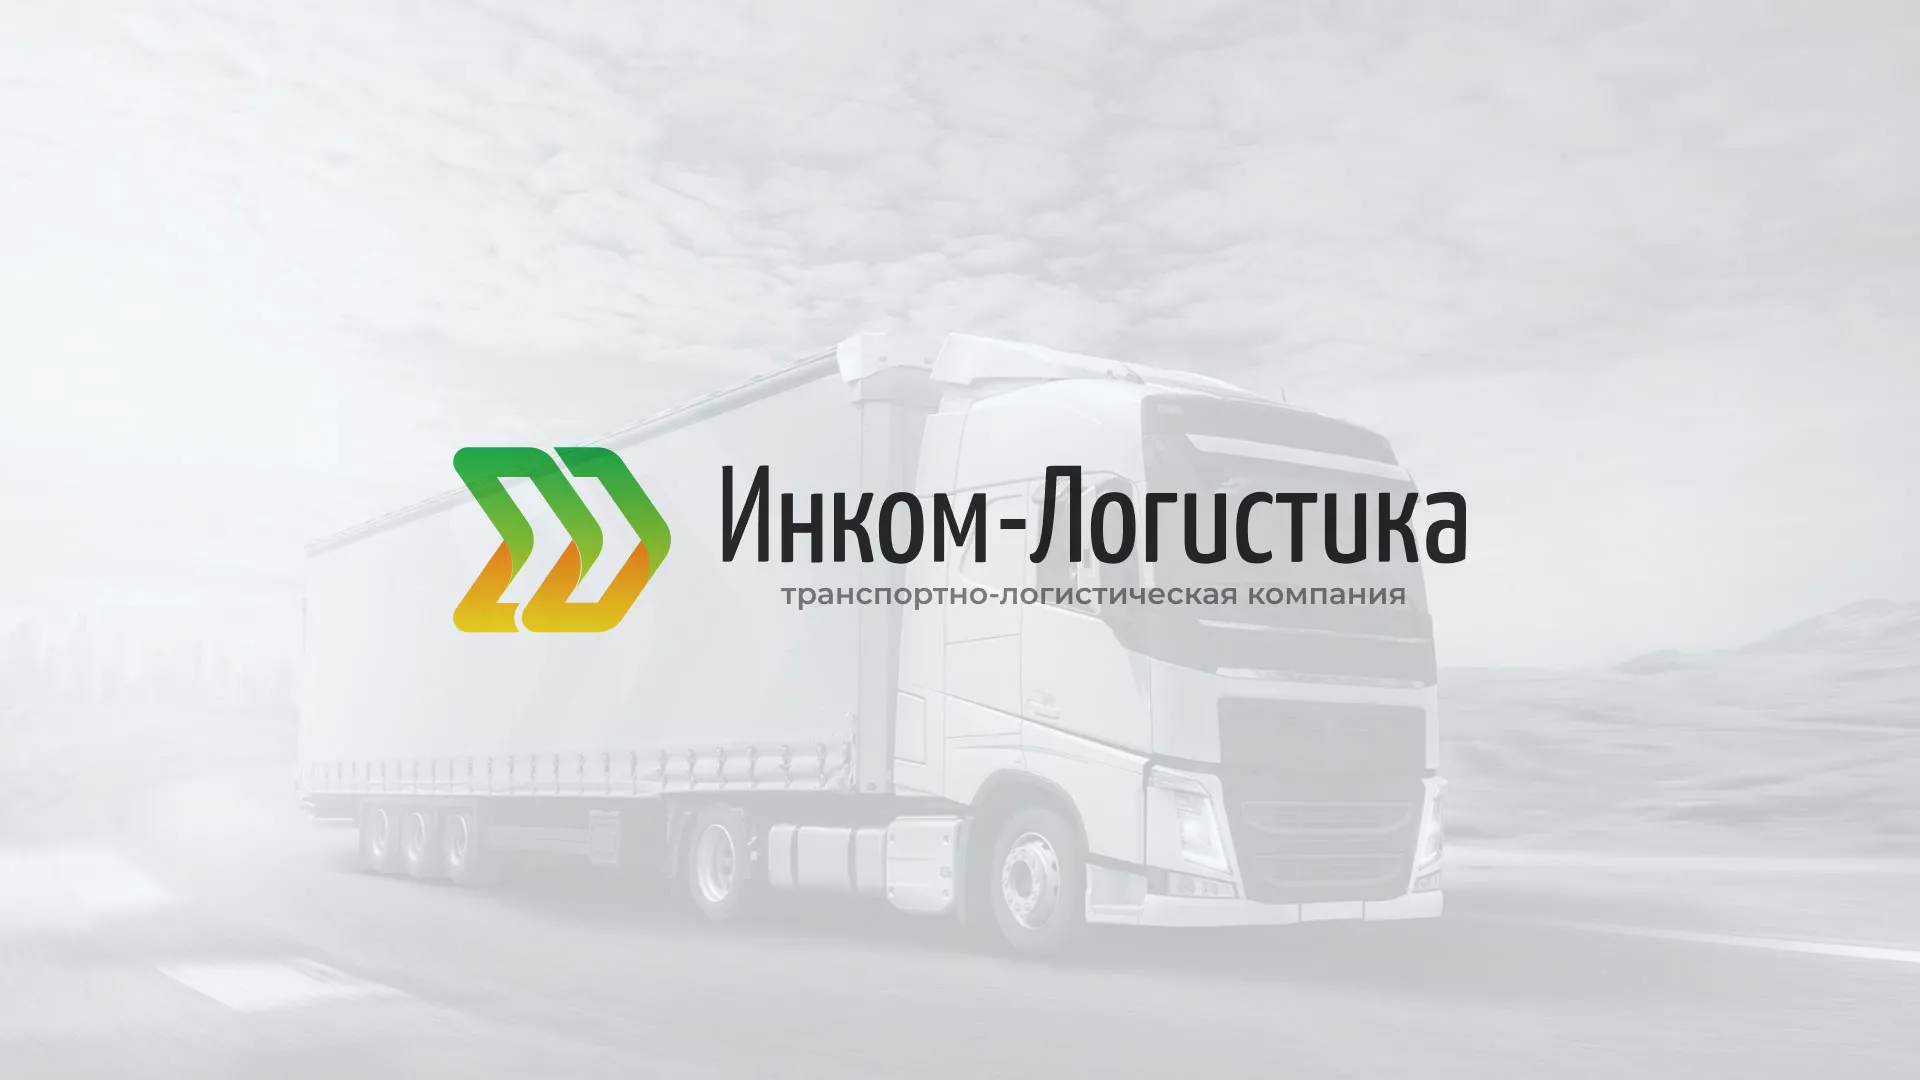 Разработка логотипа и сайта компании «Инком-Логистика» в Пятигорске